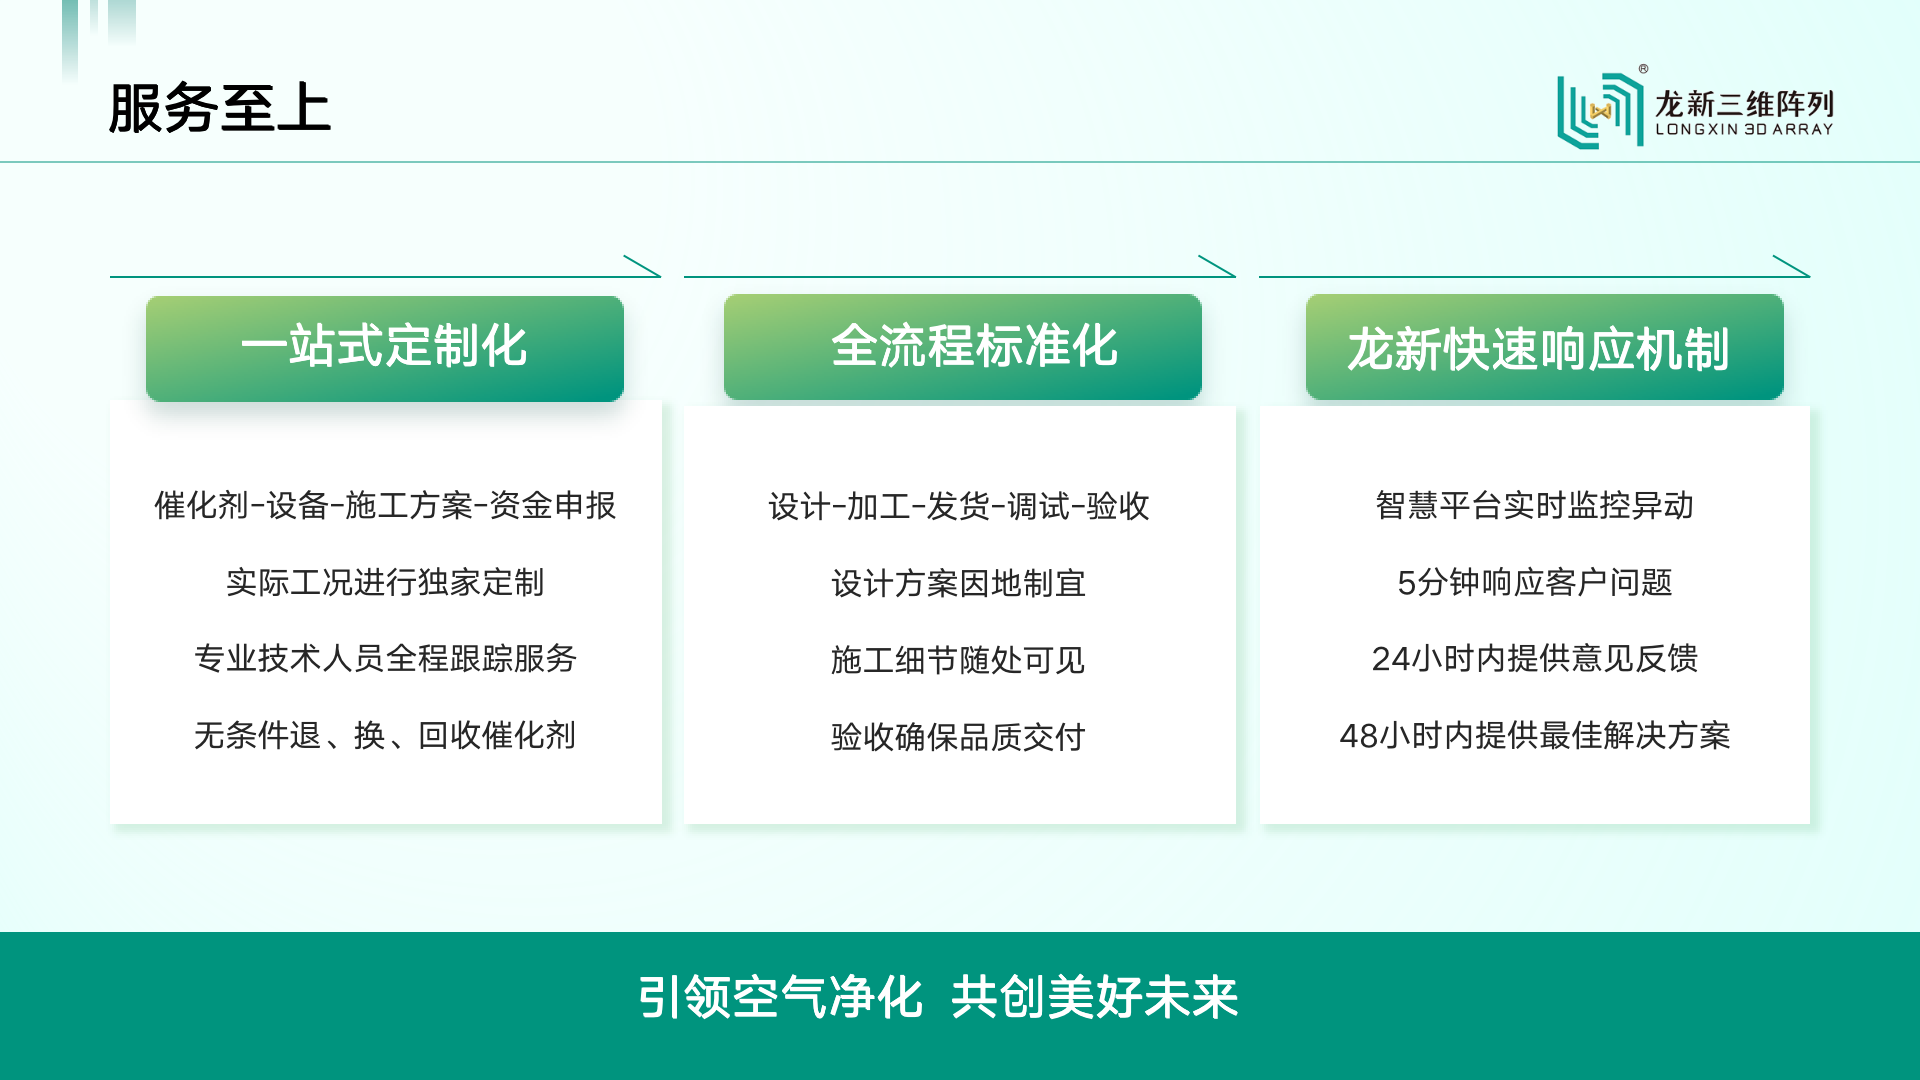 龙新三维企业介绍第四版3.21.png